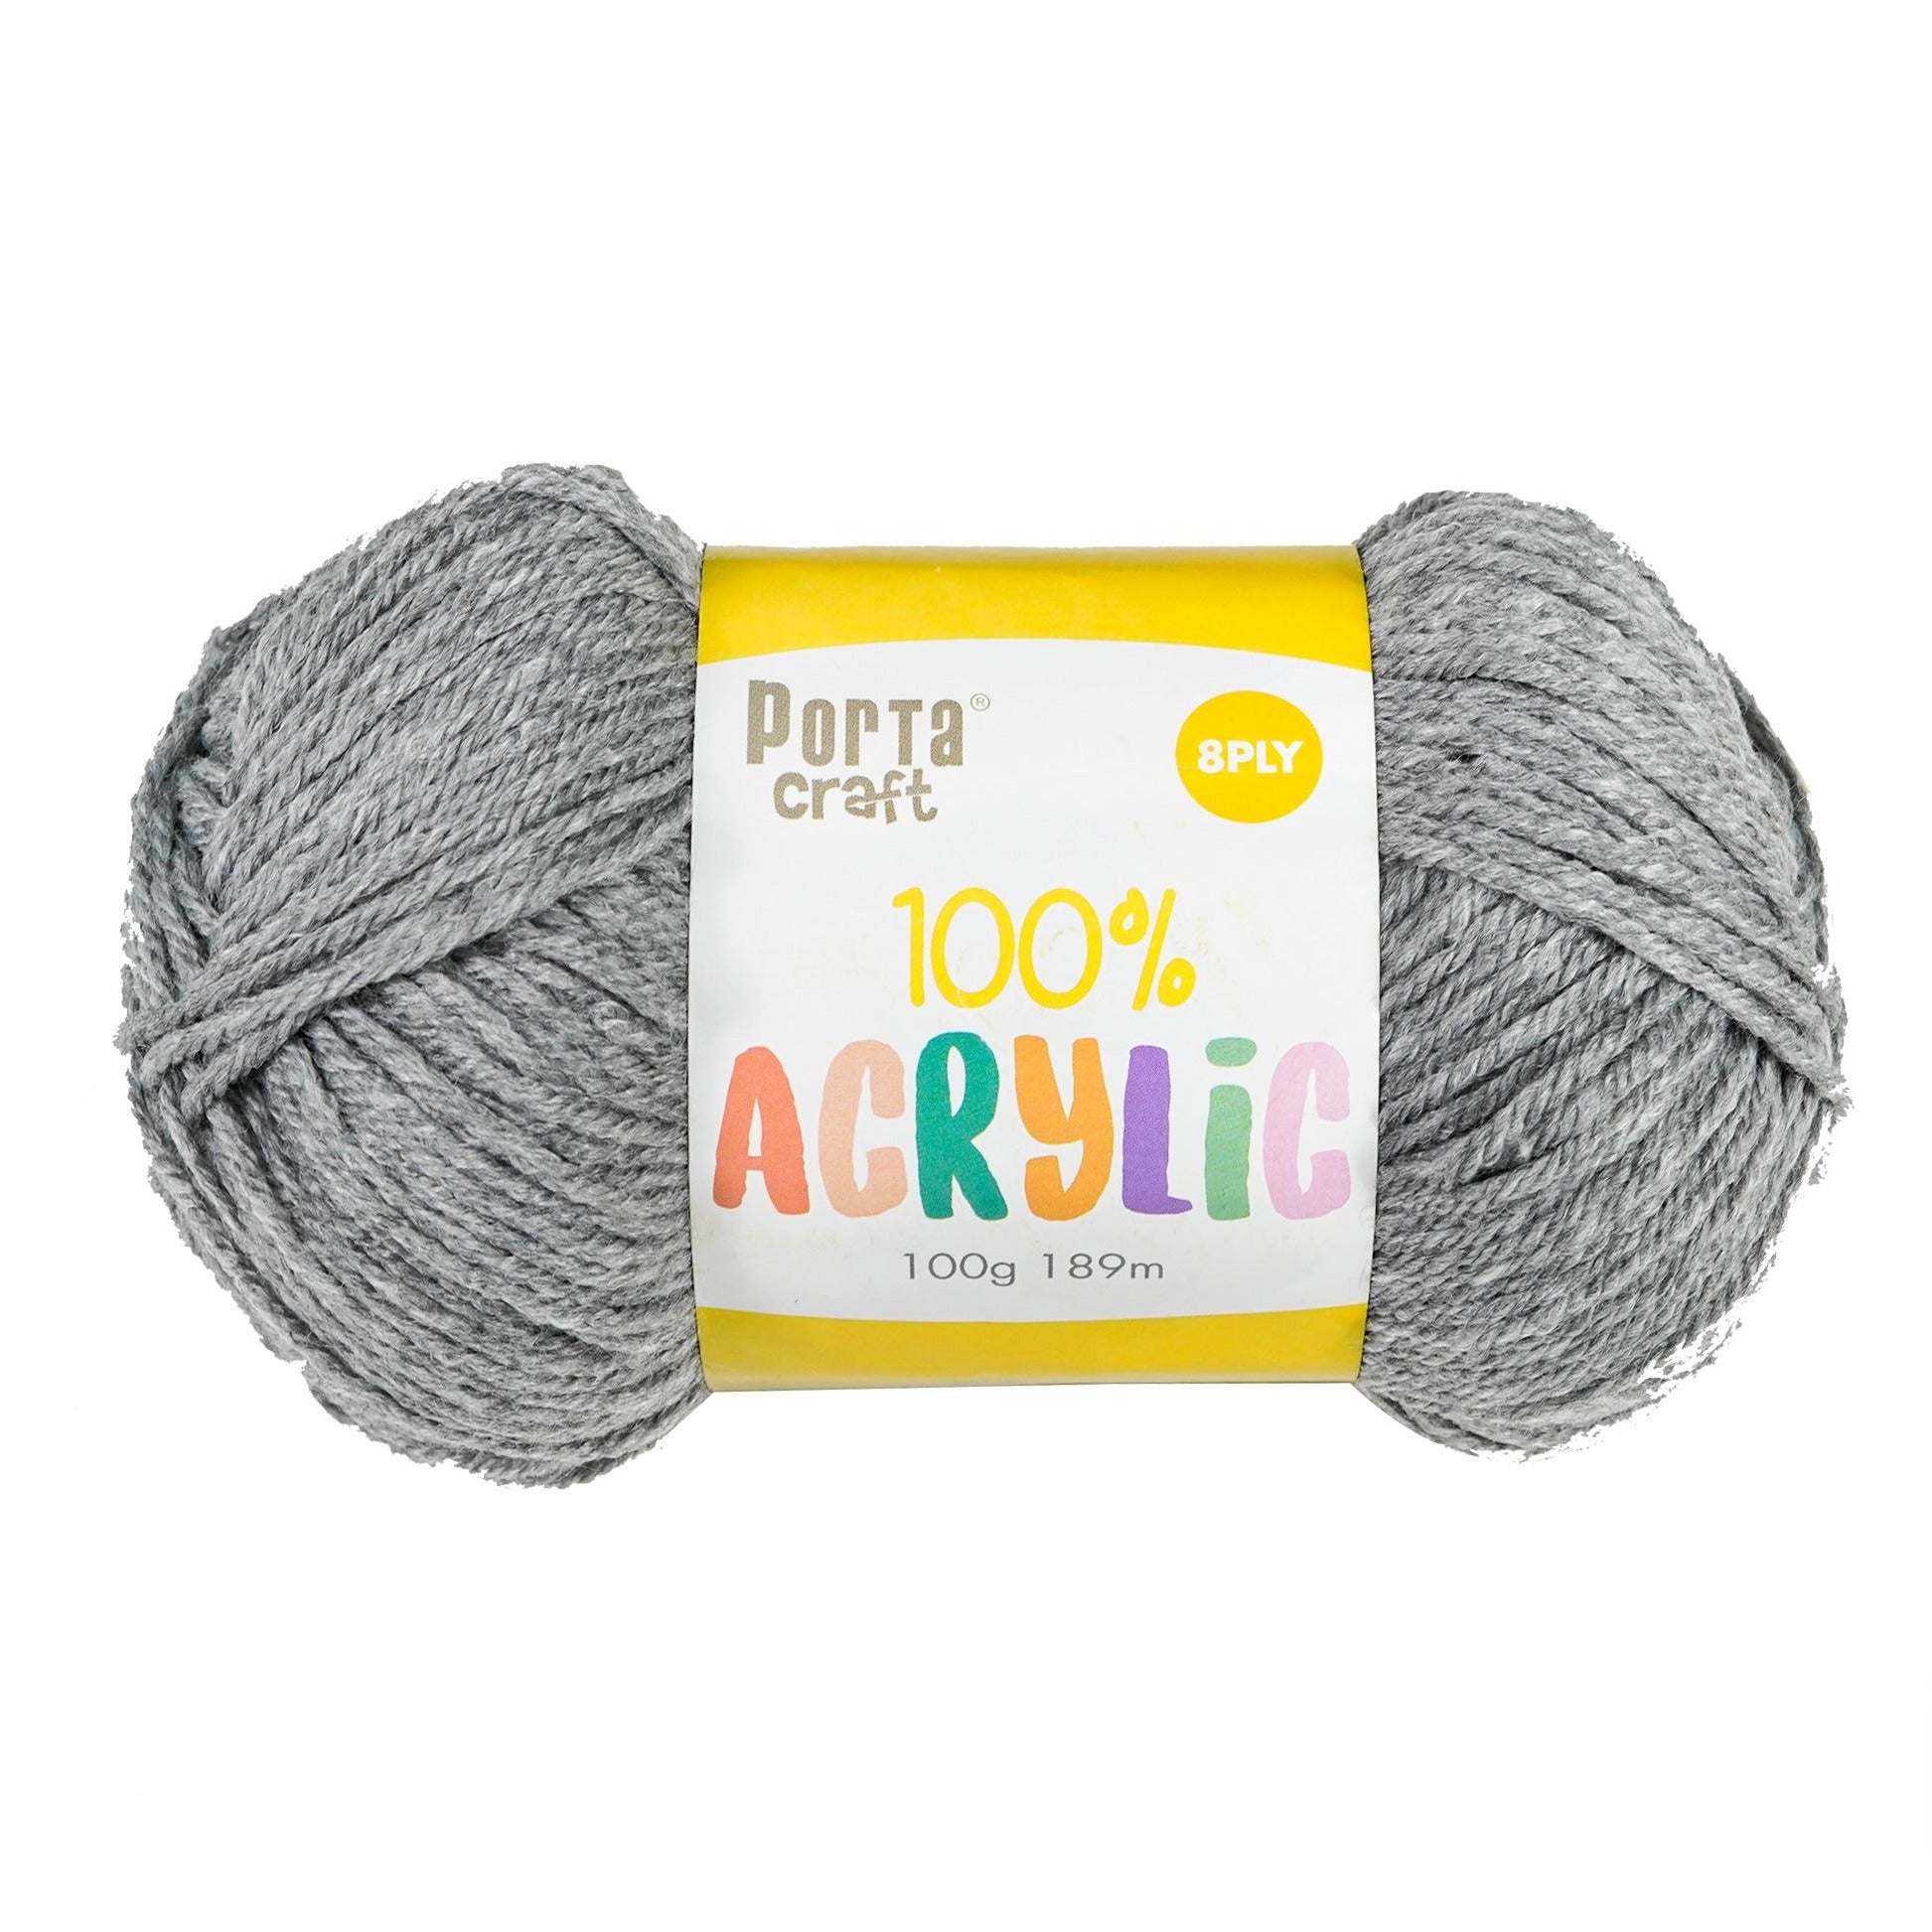 Porta Craft Acrylic Yarn 100% 100Gm 189M 8Ply Multi Sea Shimmer